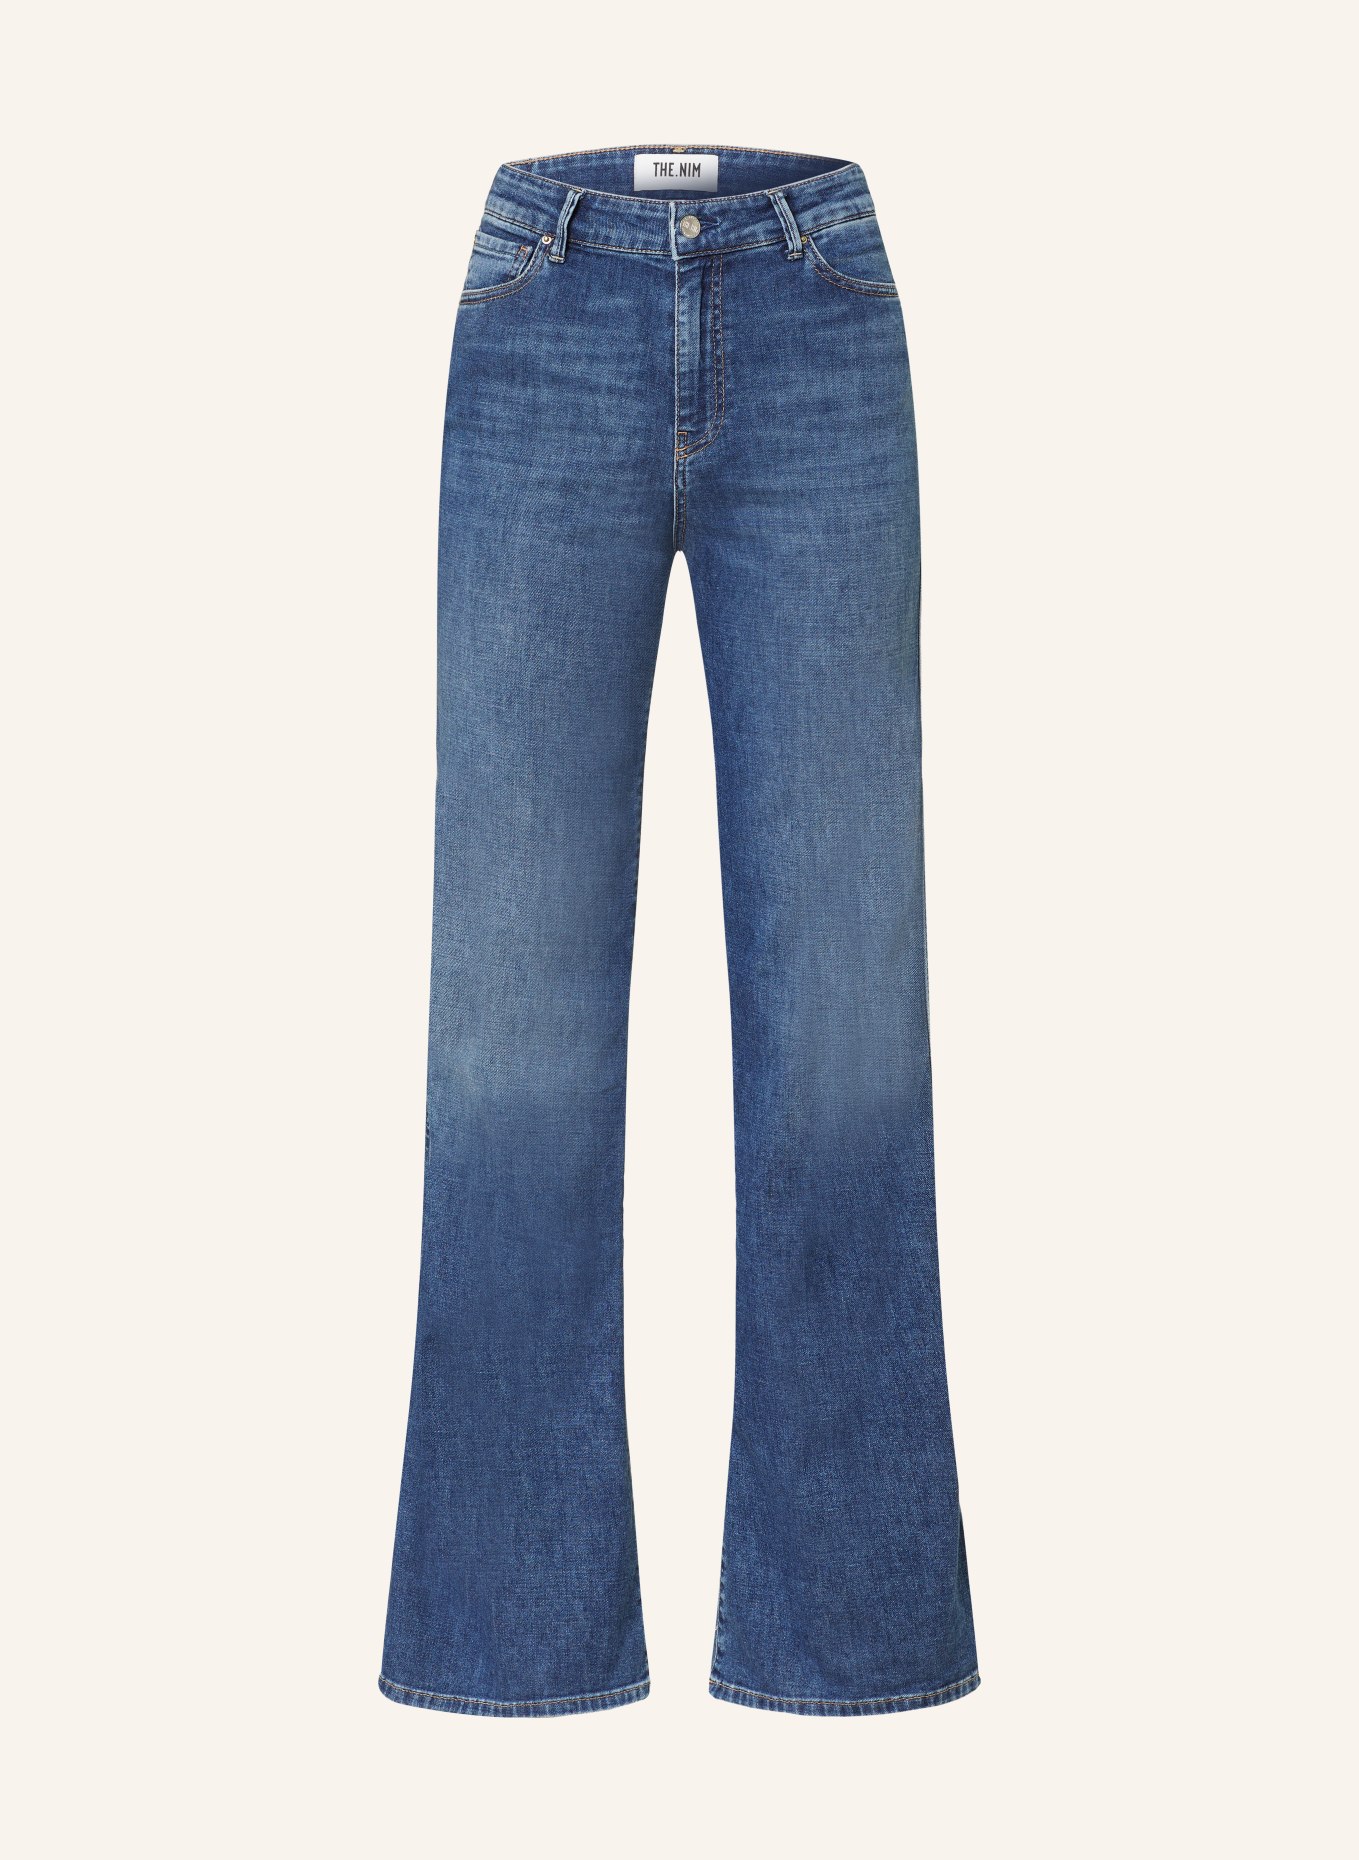 THE.NIM STANDARD Jeans DEBBIE, Farbe: W732-MDM MID BLUE (Bild 1)